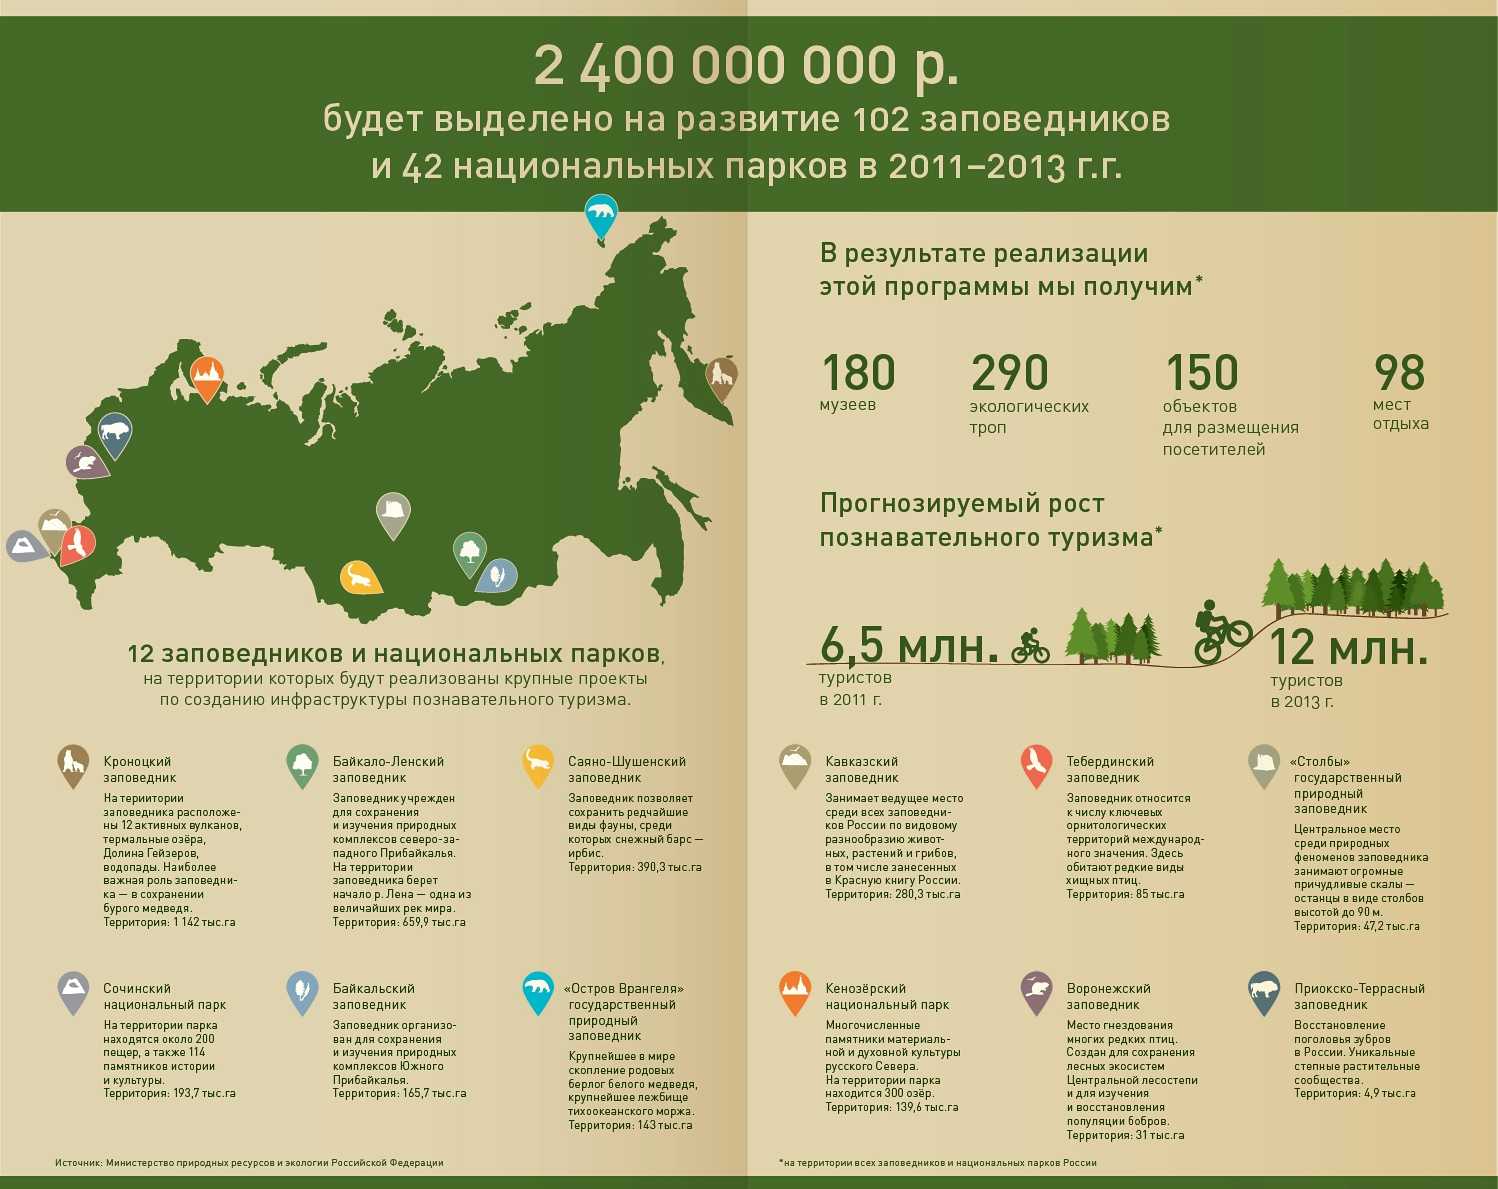 Национальные парки россии: фото и описание